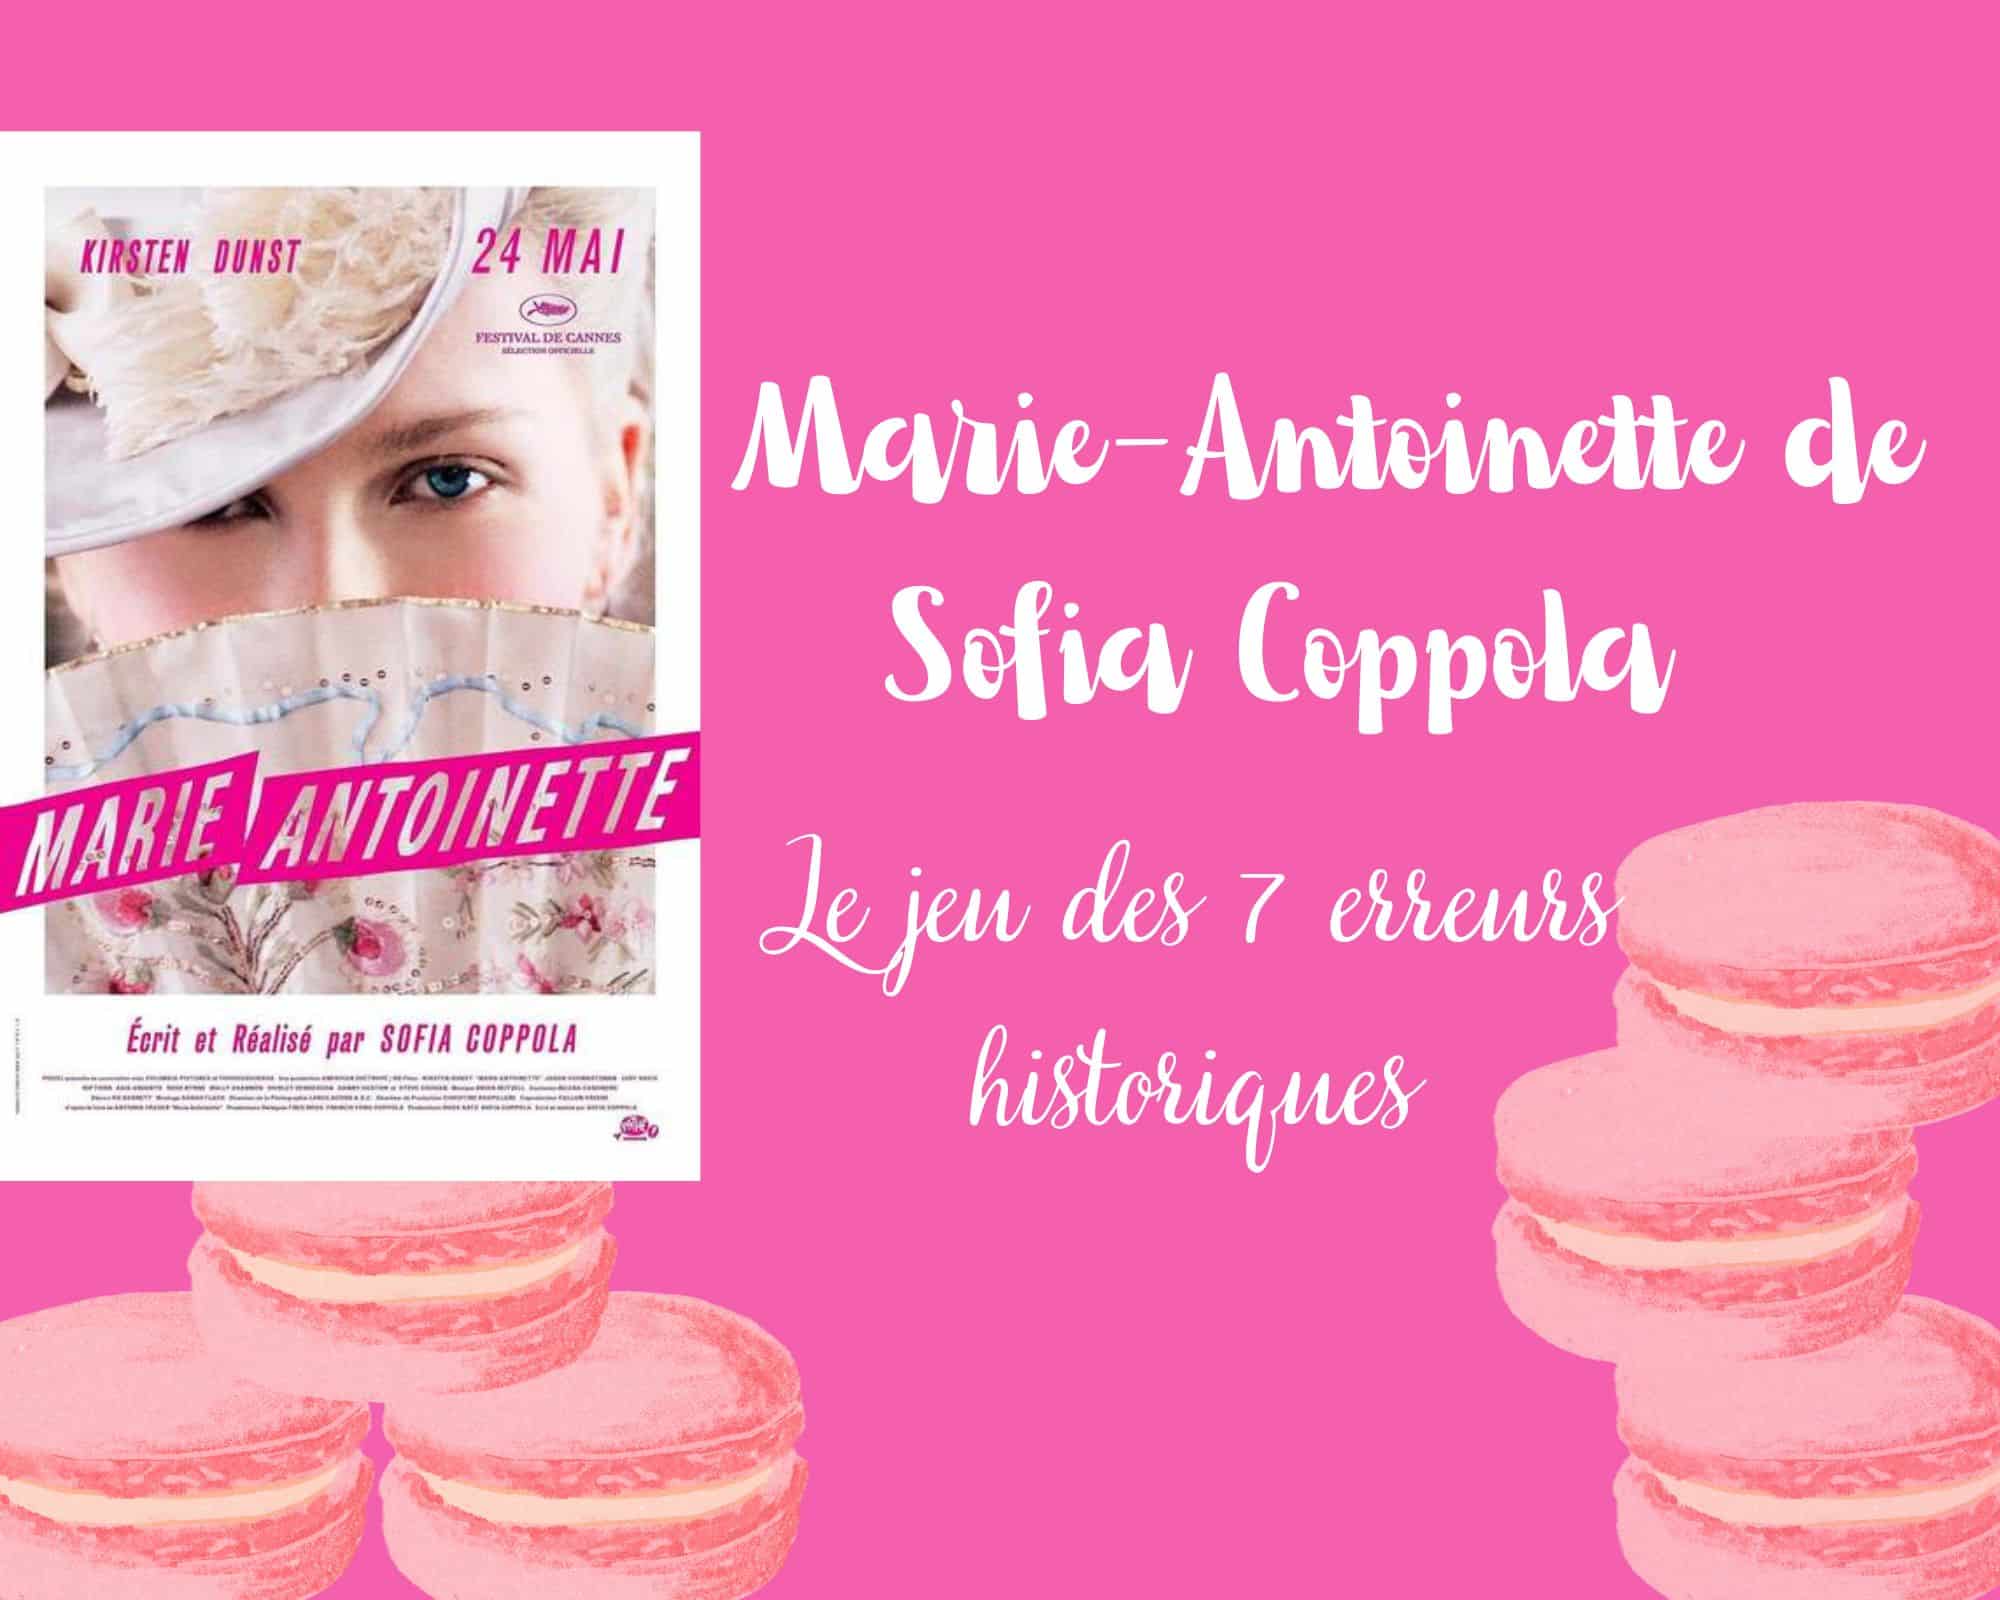 You are currently viewing Marie-Antoinette de Sofia Coppola : Le jeu des 7 erreurs historiques